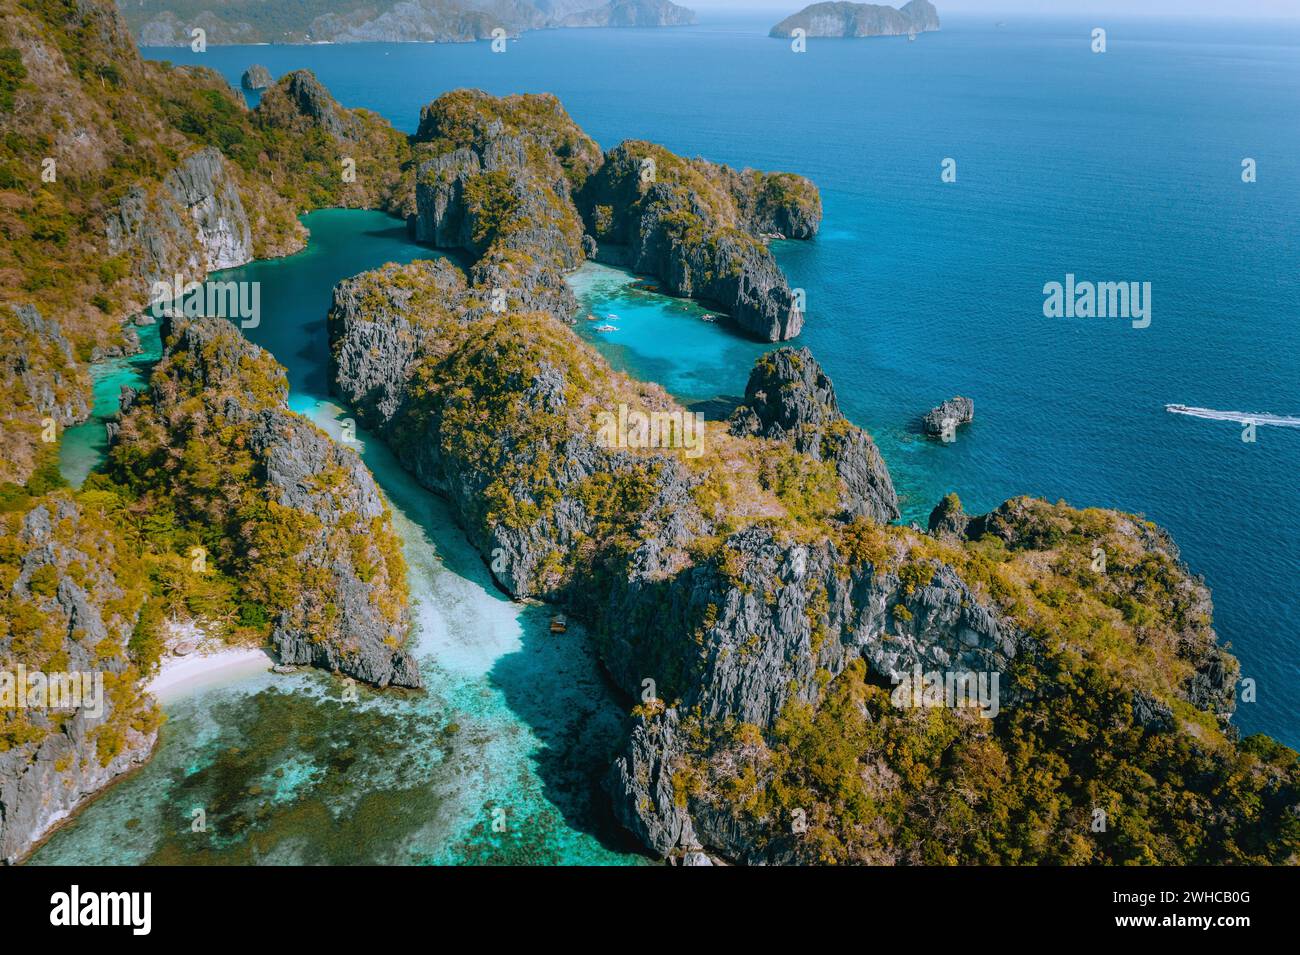 Drone aérien sur le magnifique paysage du blue lagoon tropical entouré de falaises calcaires déchiquetées. Docks de Miniloc Island, El Nido, Palawan, Philippines. Banque D'Images